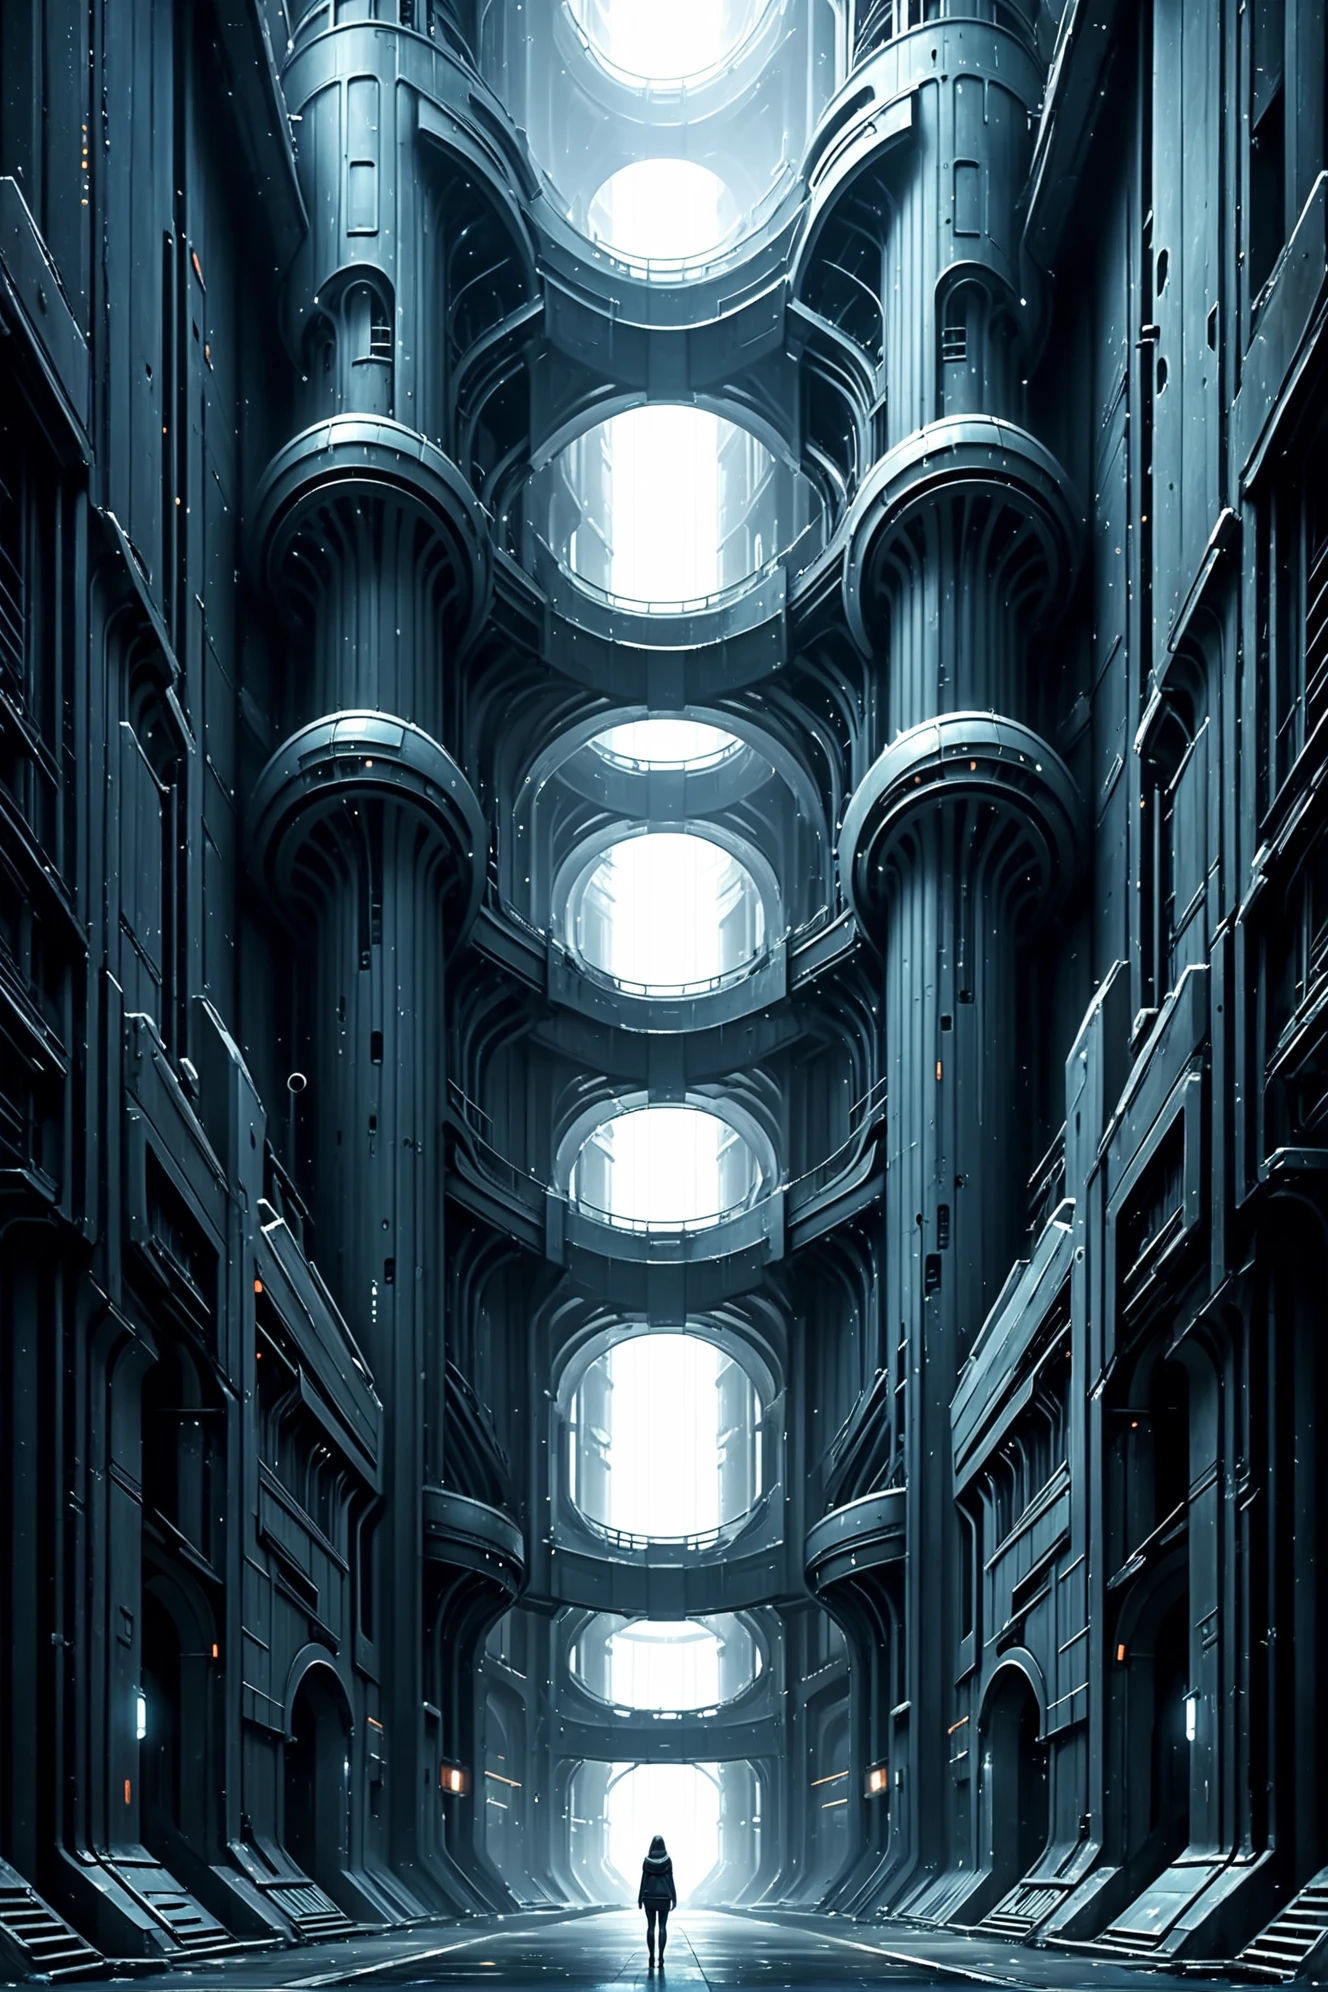 callejón oscuro en un abandonado,Megaestructura de ciencia ficción imposible fuera del universo, Obra maestra